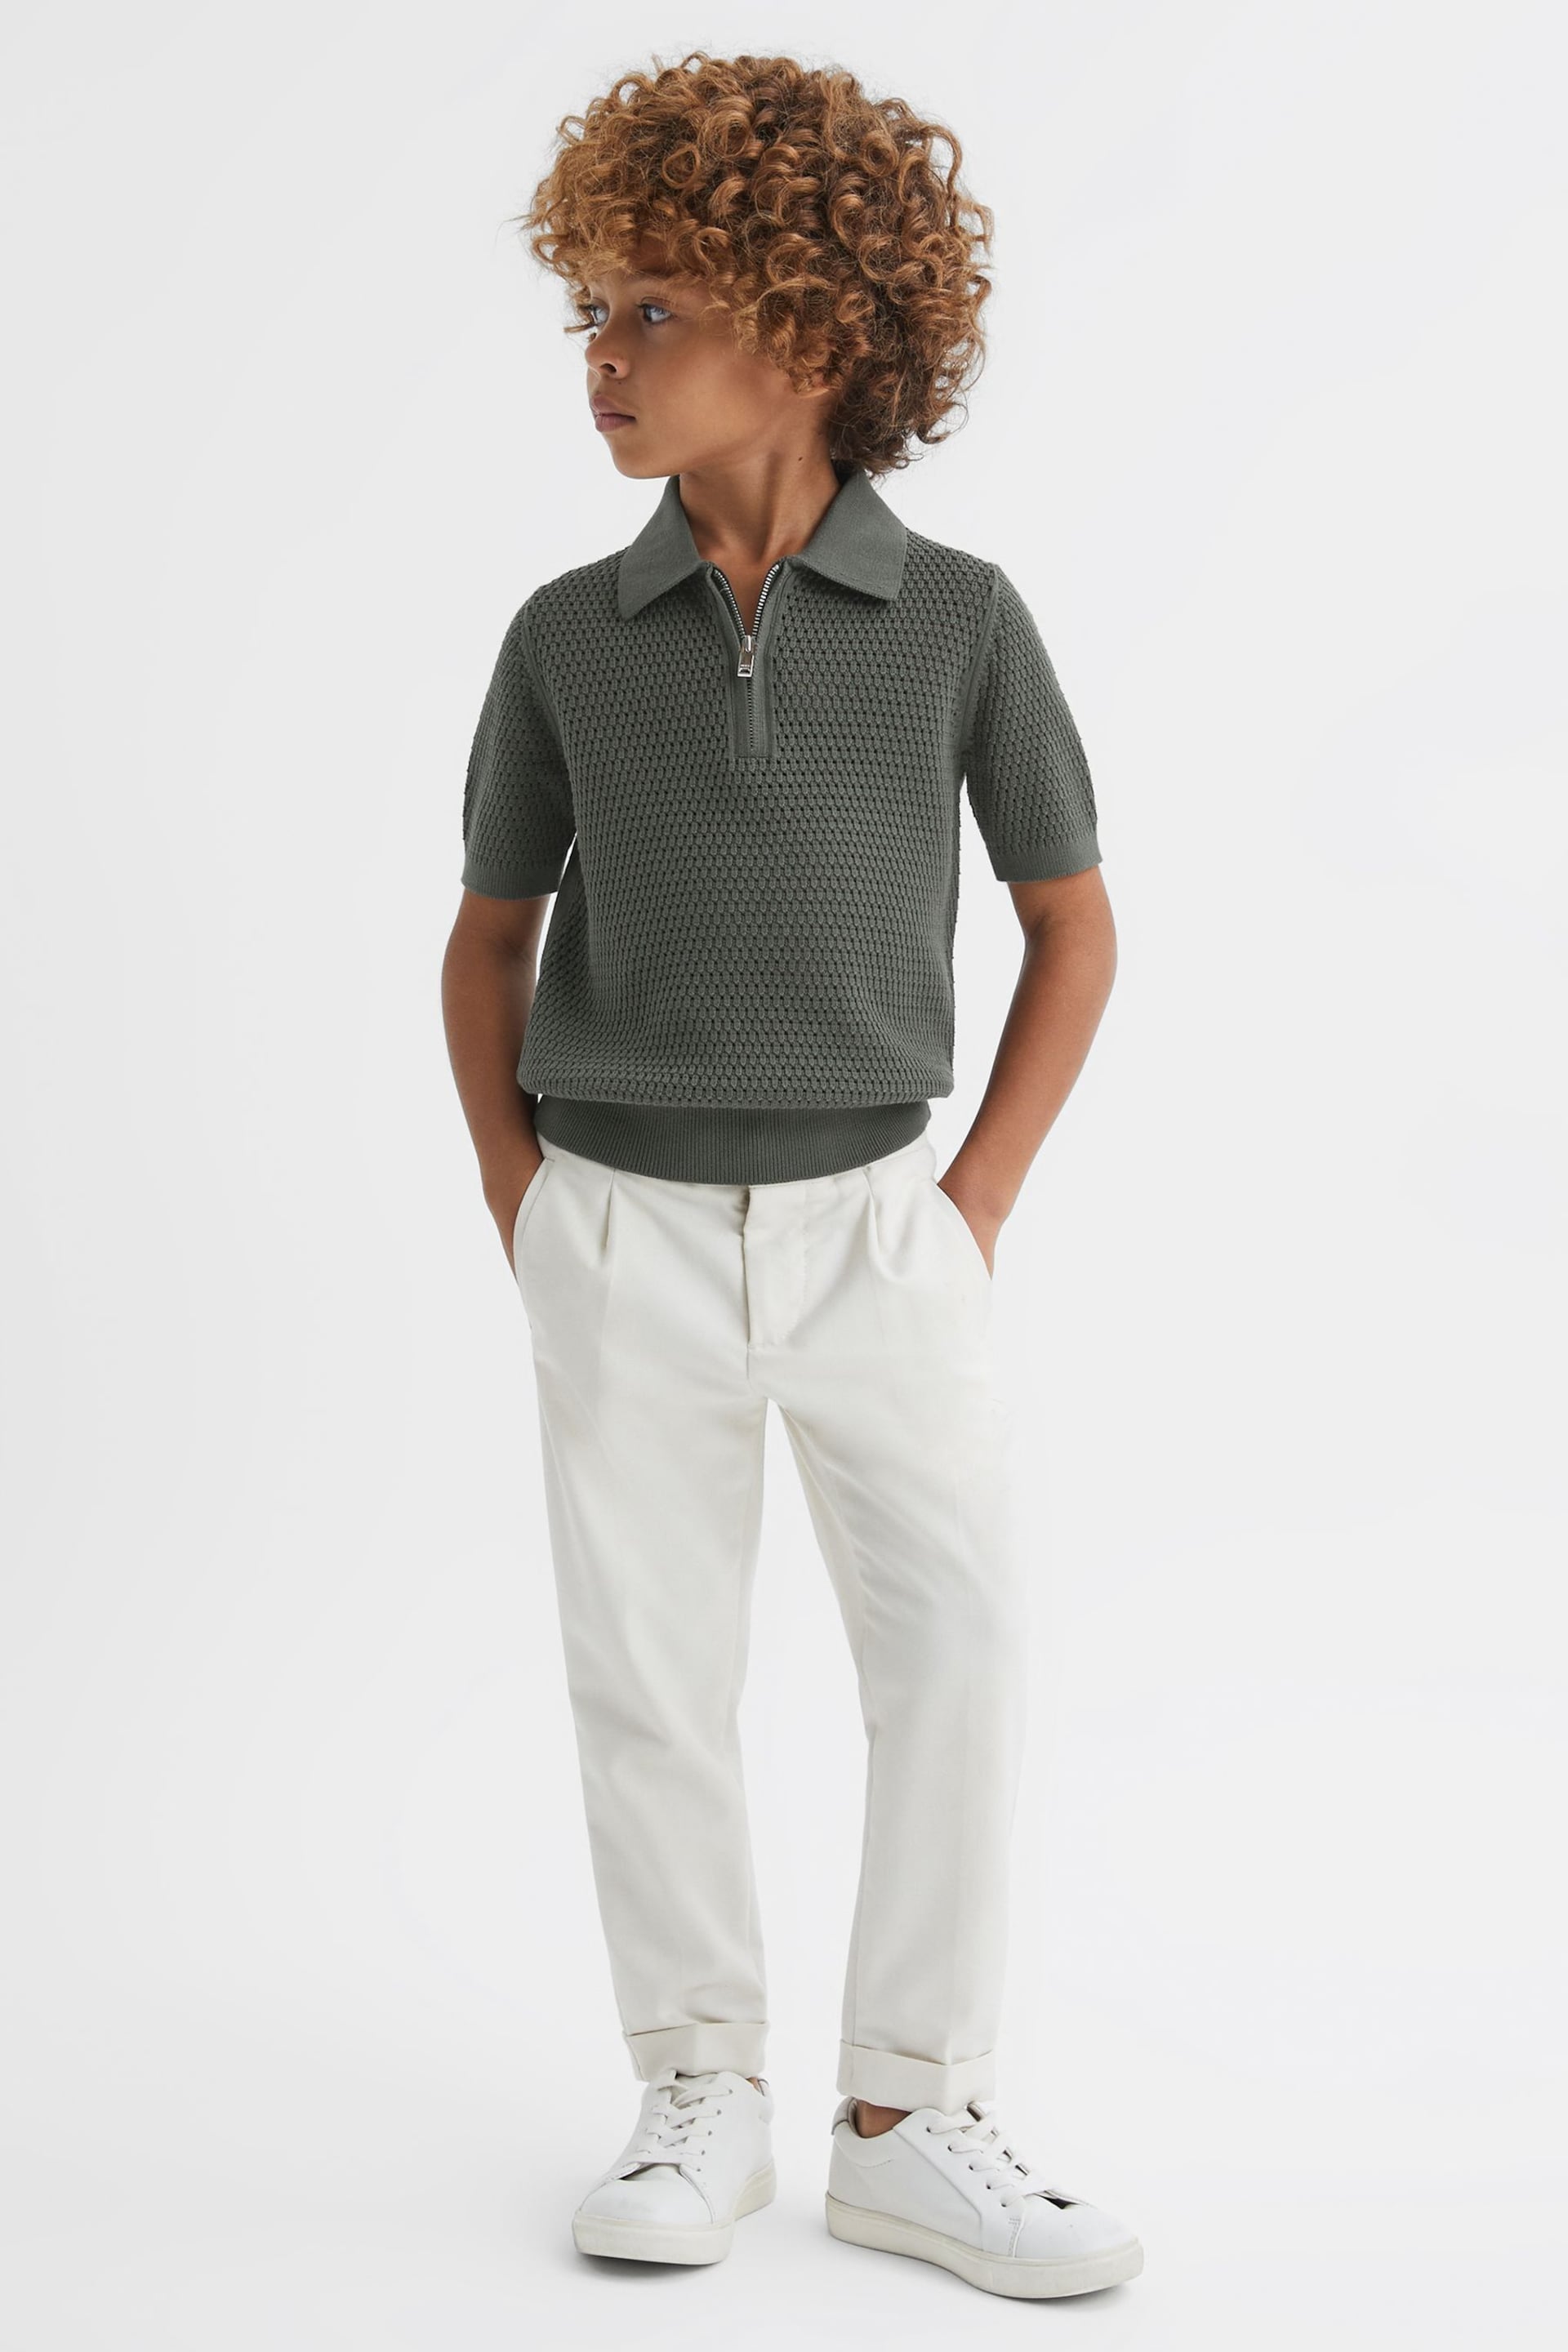 Reiss Dark Sage Burnham Teen Textured Half-Zip Polo T-Shirt - Image 3 of 6